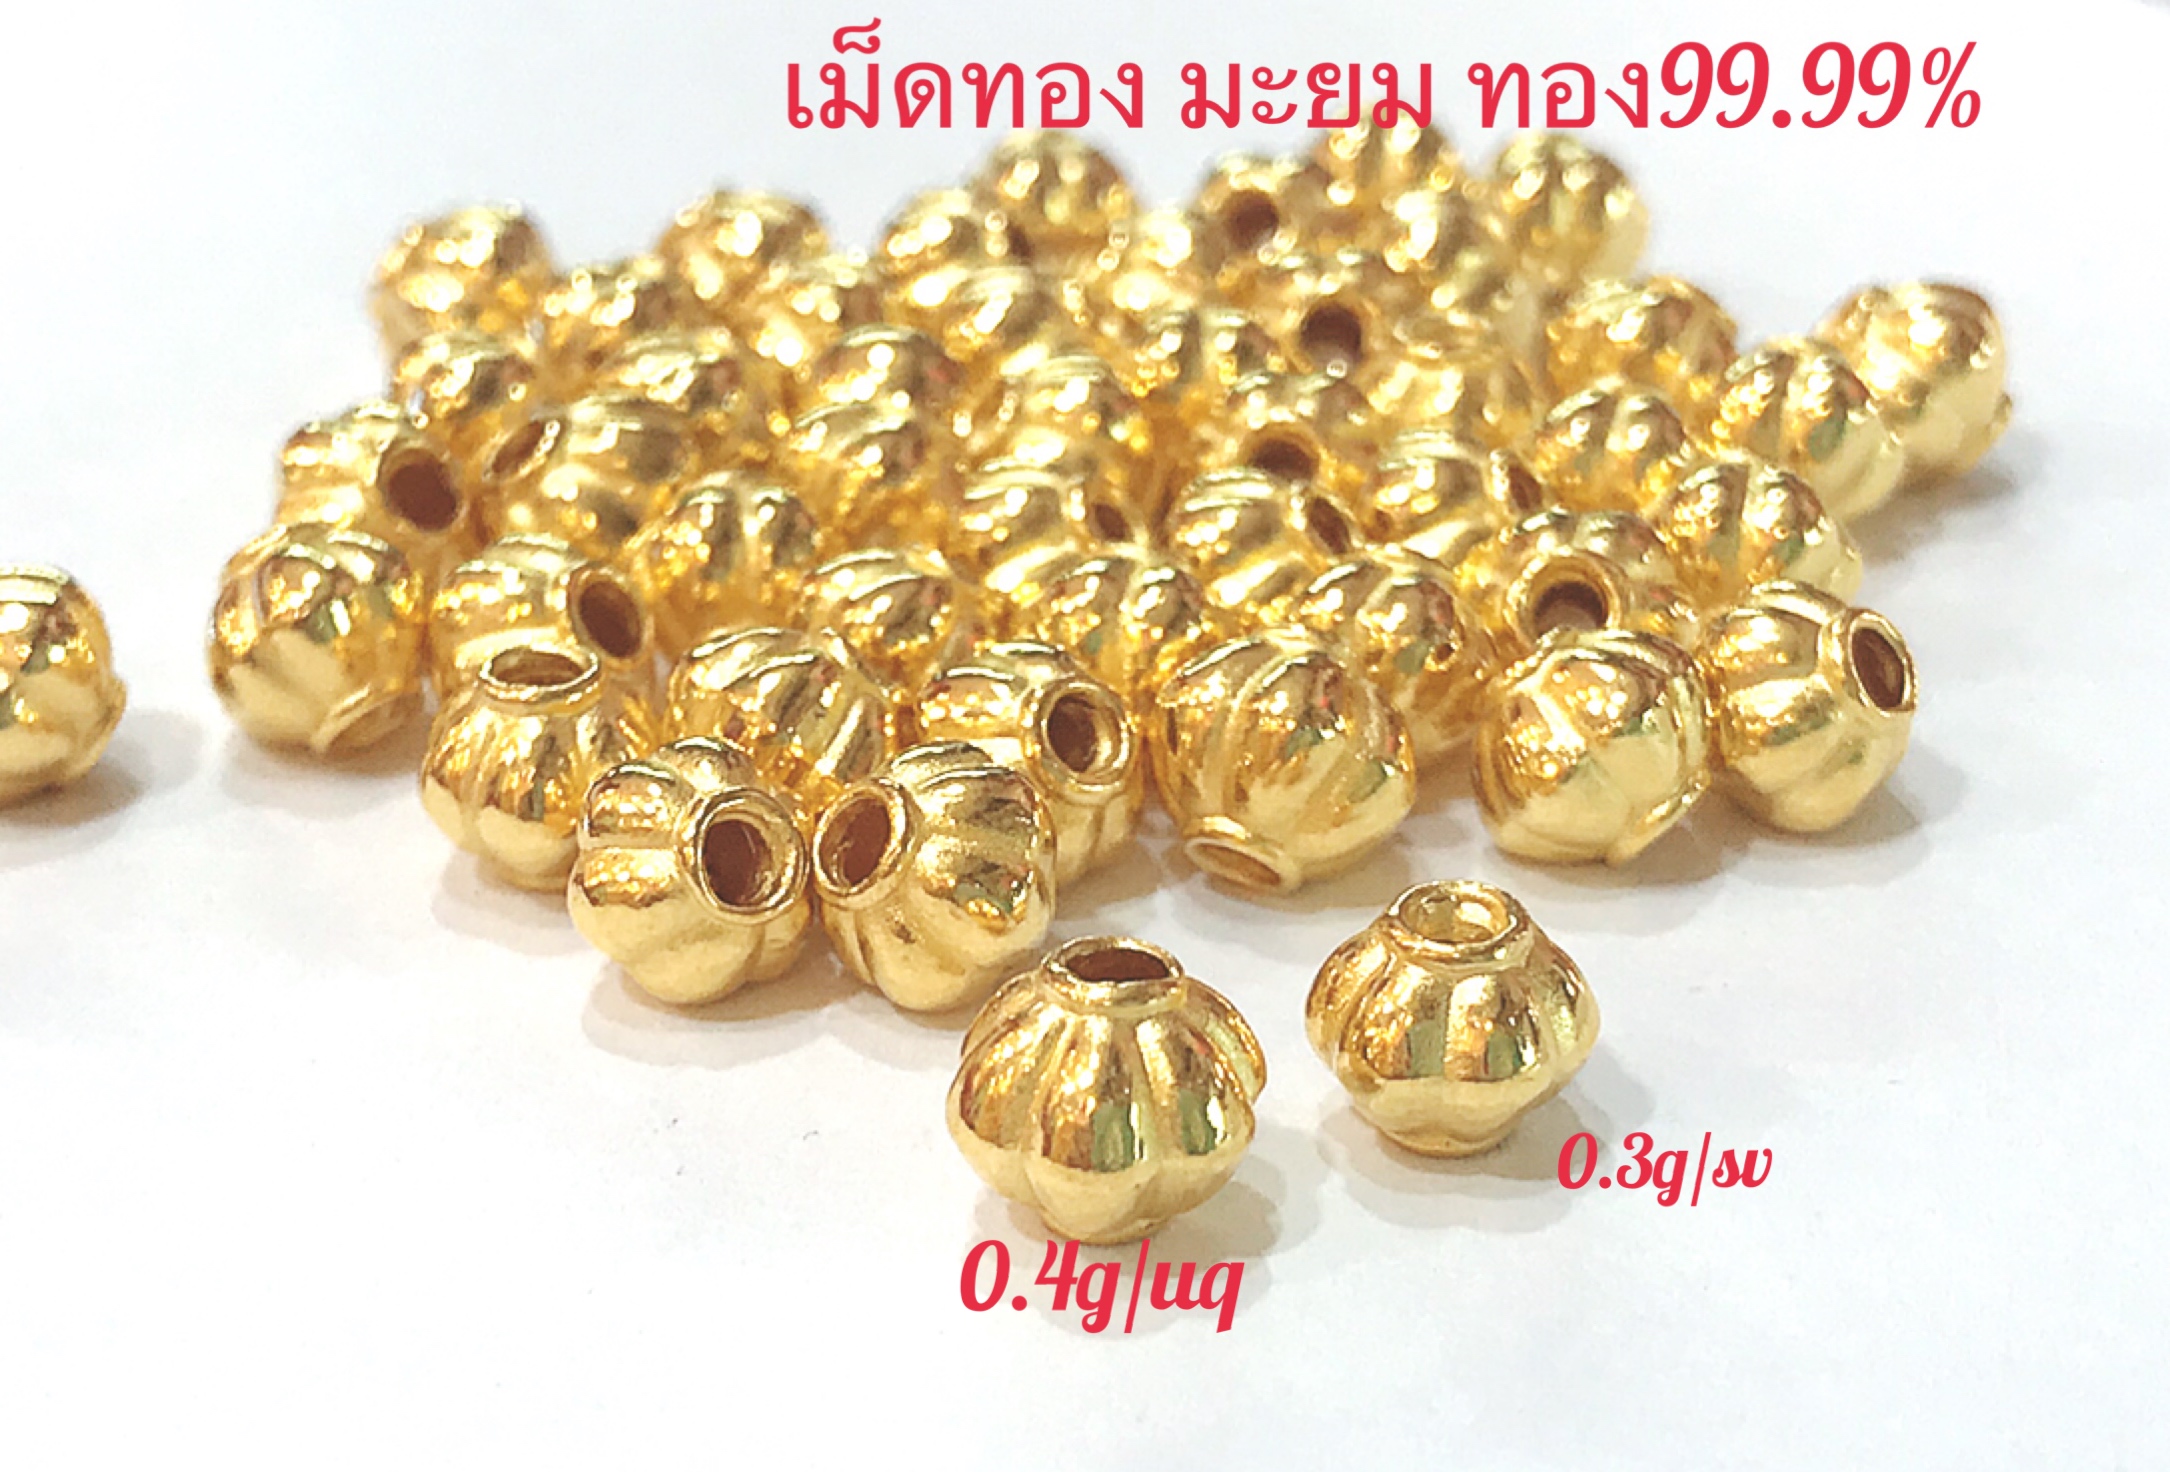 เม็ดมะยมทอง7มิน-8มินทอง99.99%